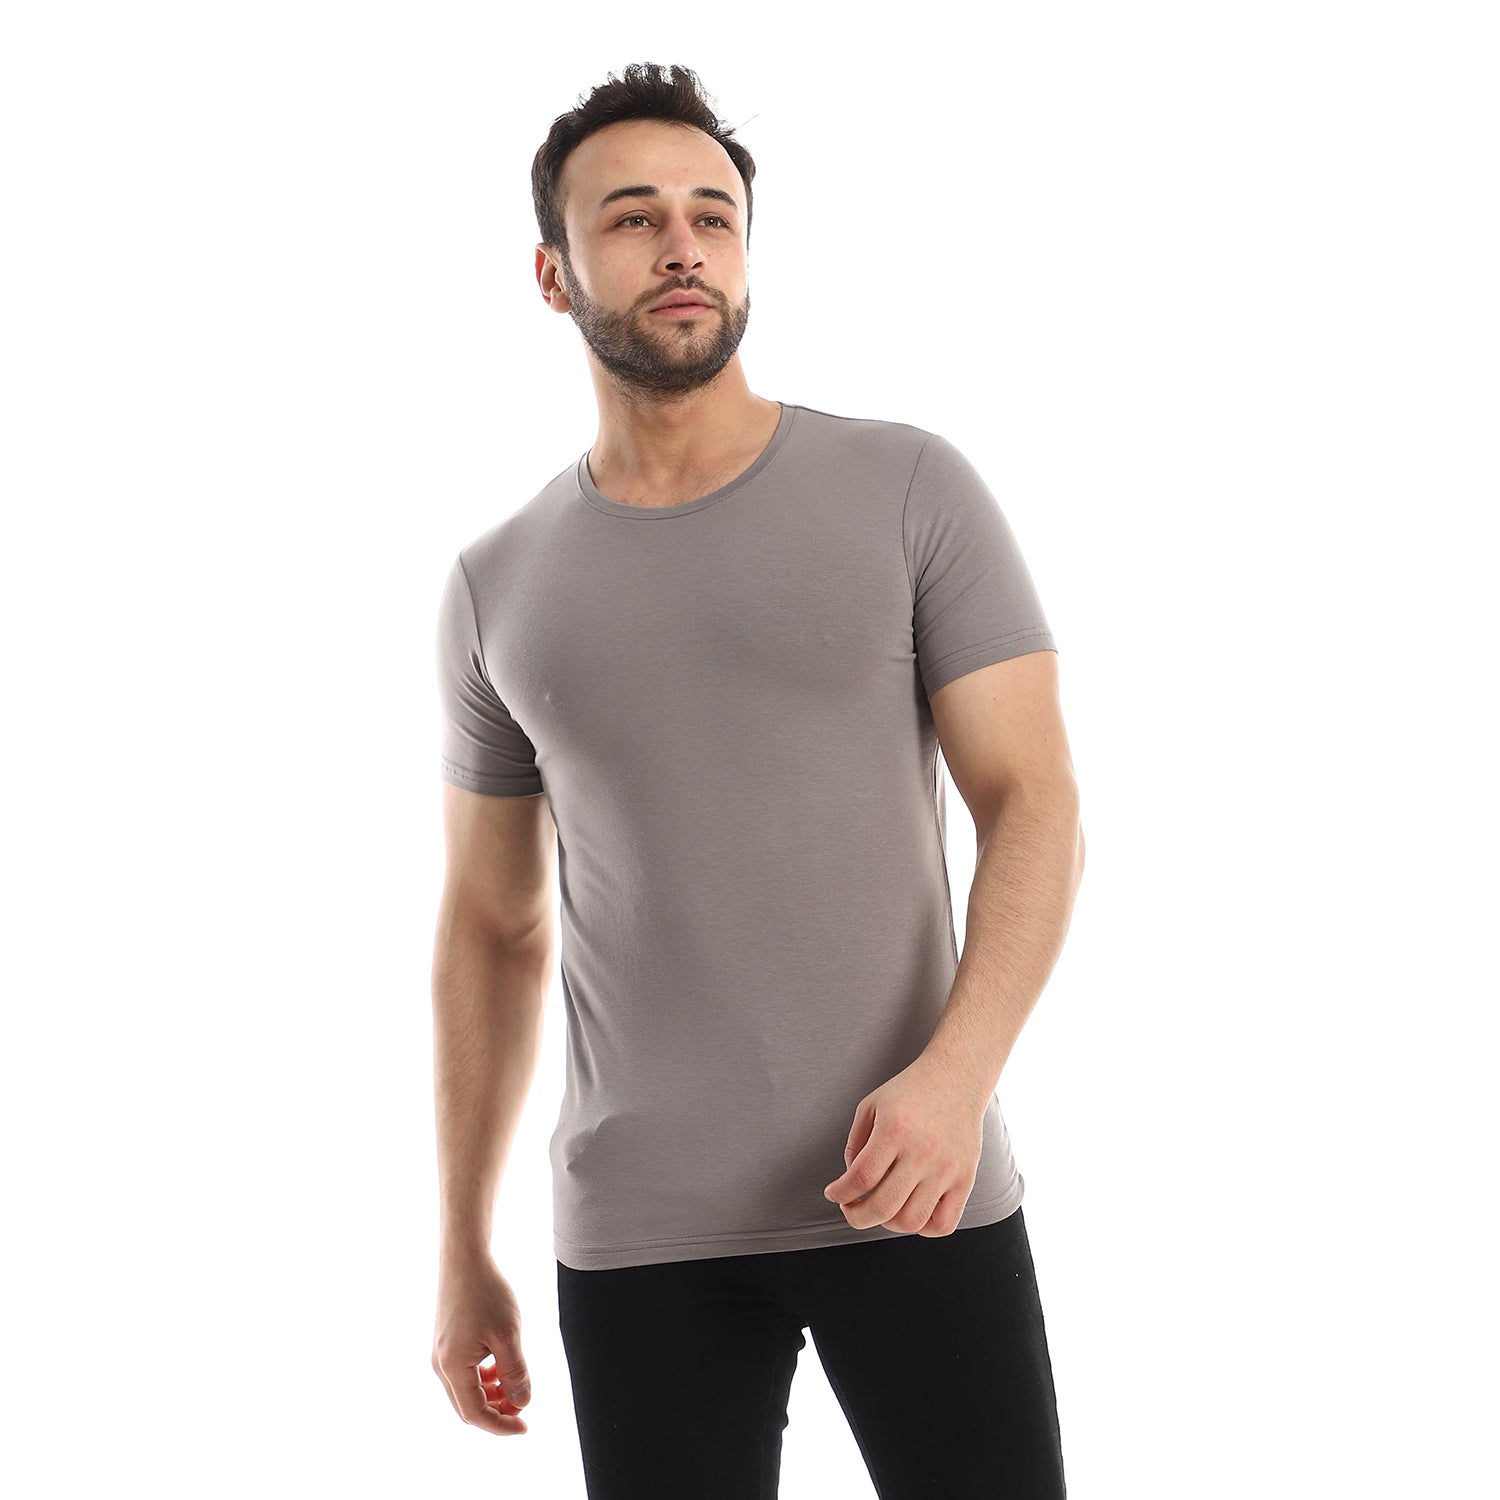 Red Cotton Short Sleeve Undershirt For Men- Round Neck, Grey